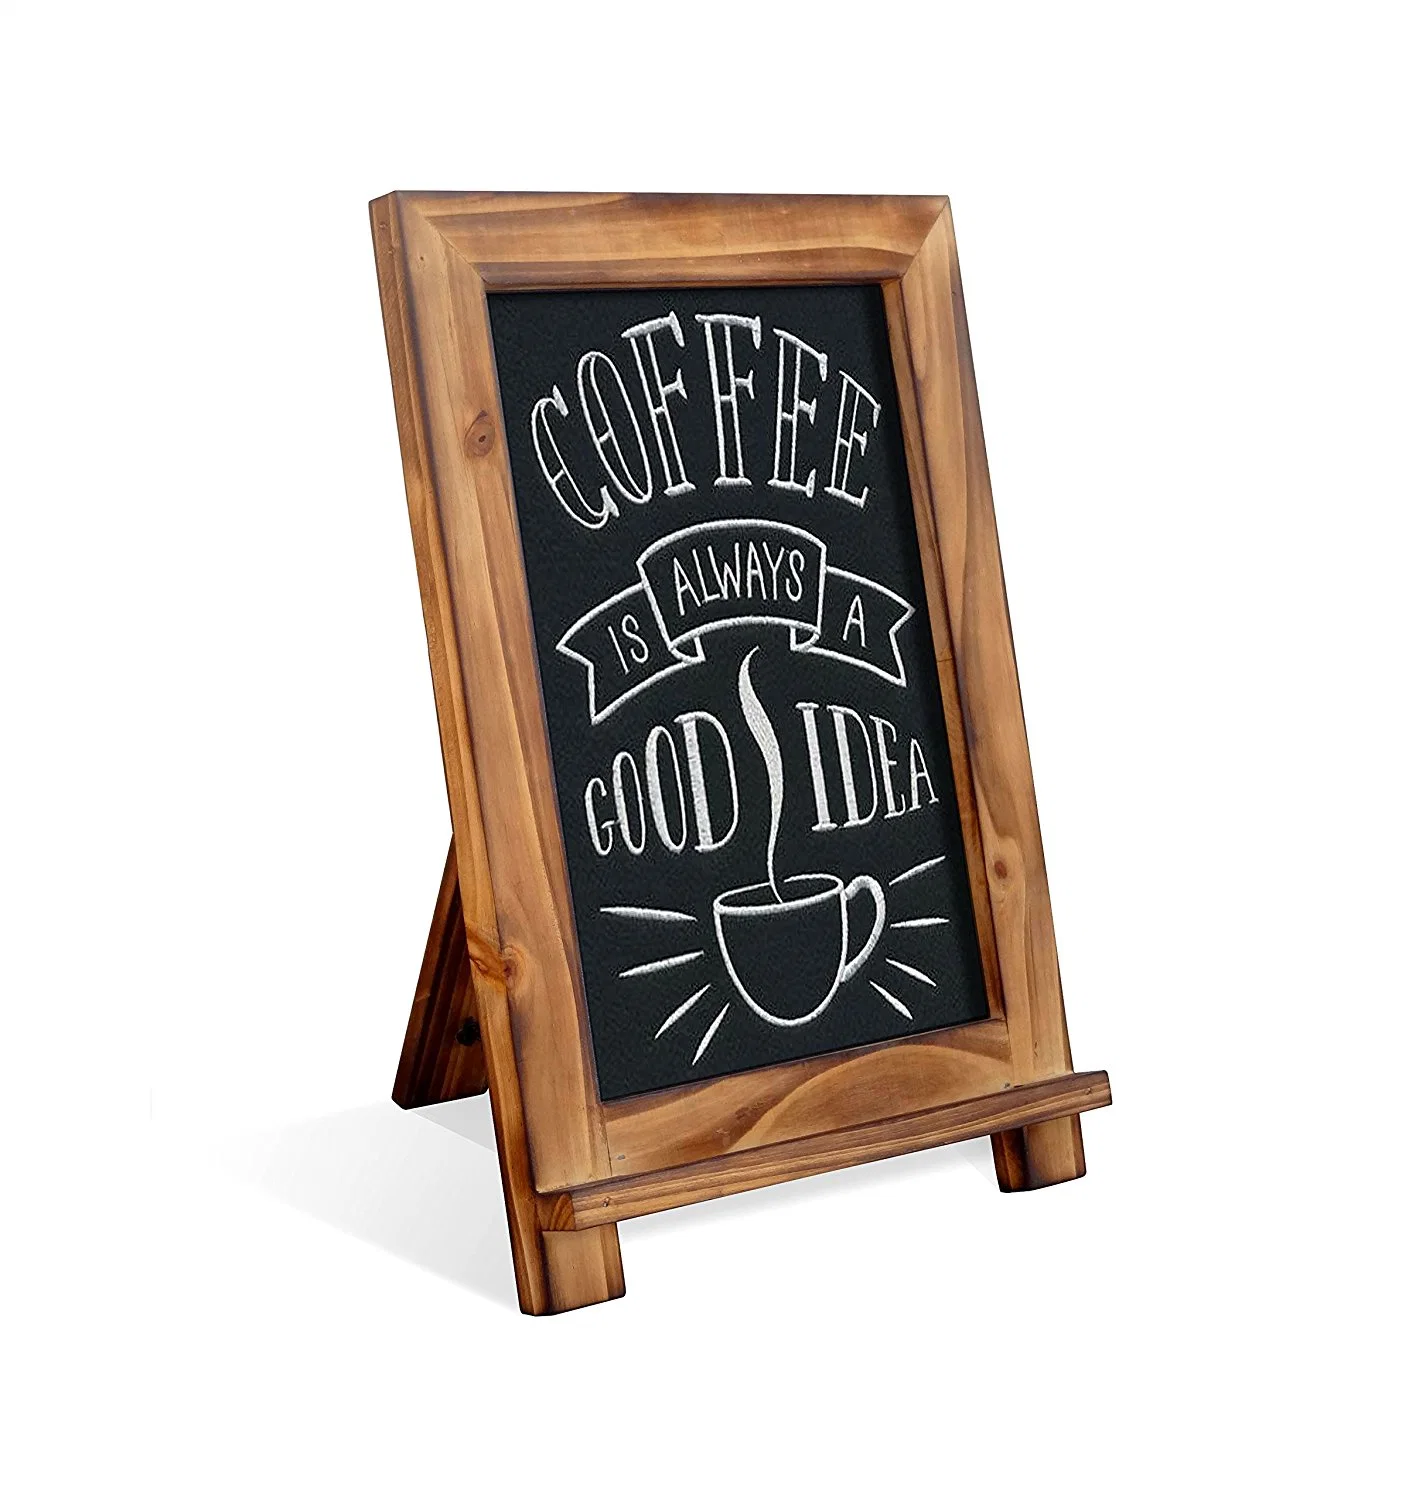 Tabletop Menu Chalkboard Free Standing Restaurant Blackboard Wooden Memo Board